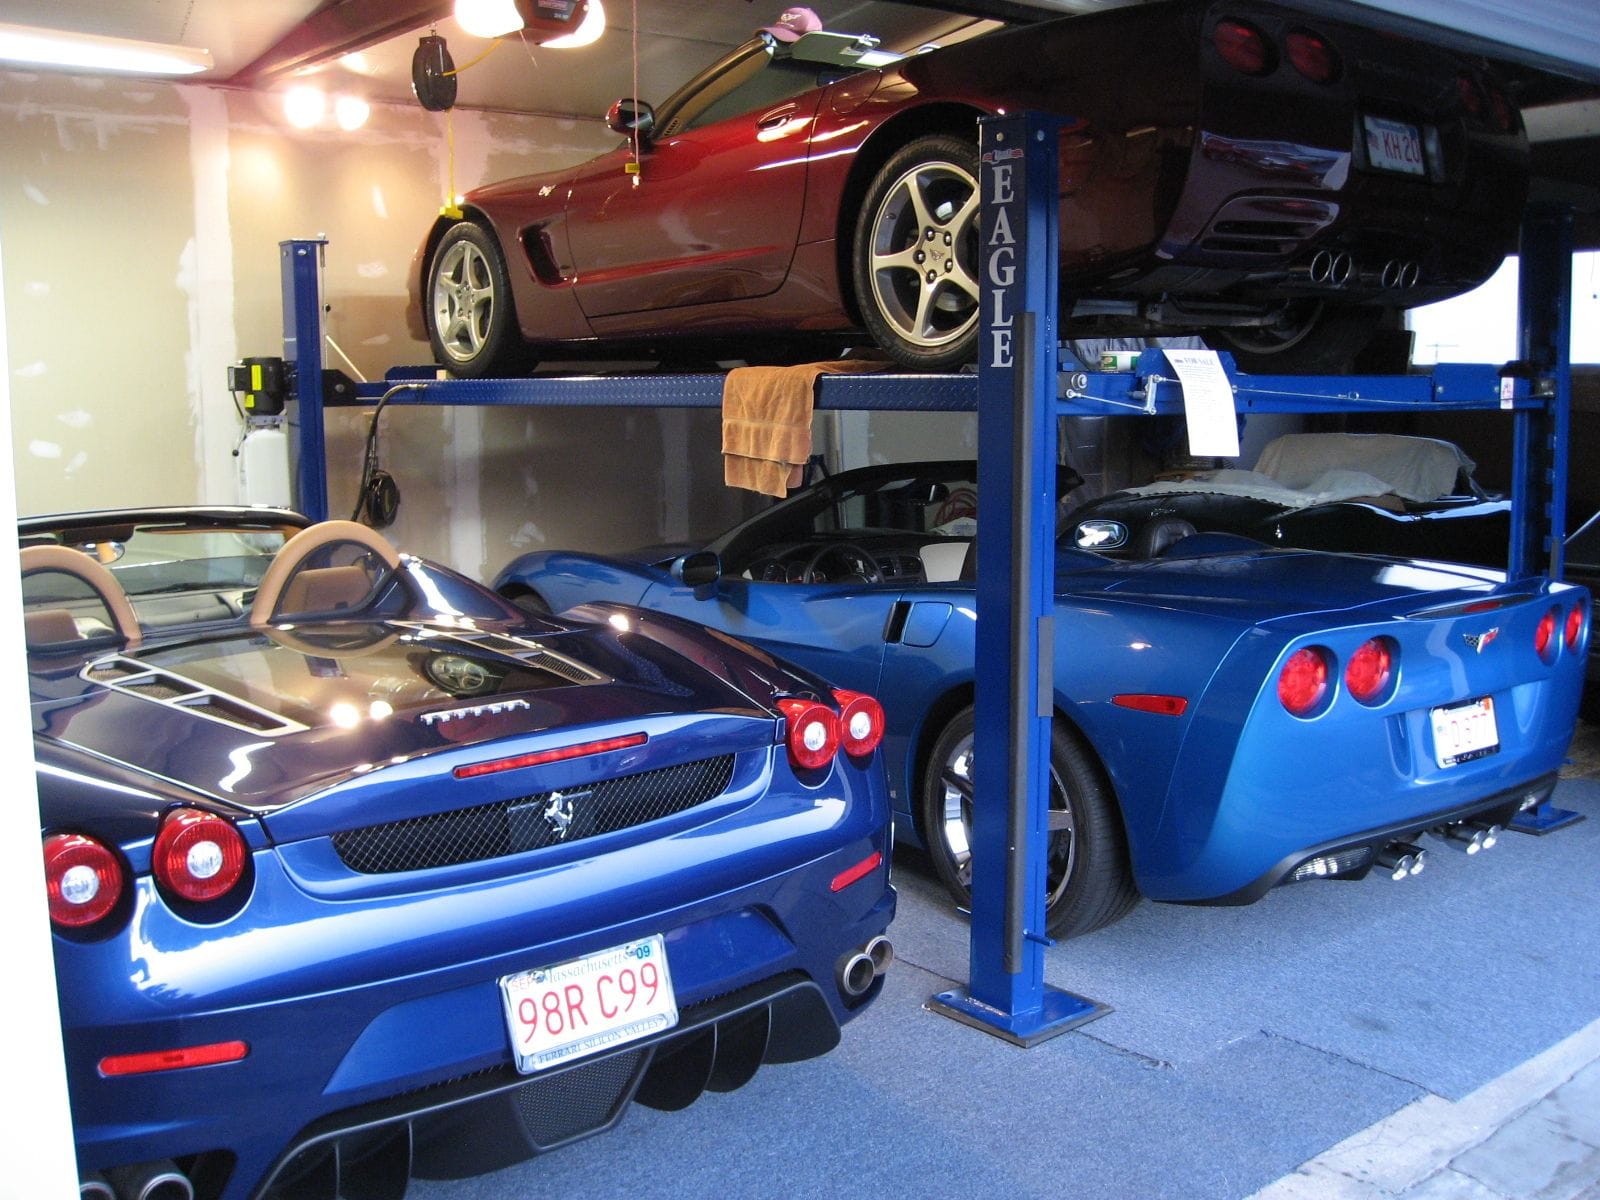 4 Post Lift For Garage CorvetteForum Chevrolet Corvette Forum